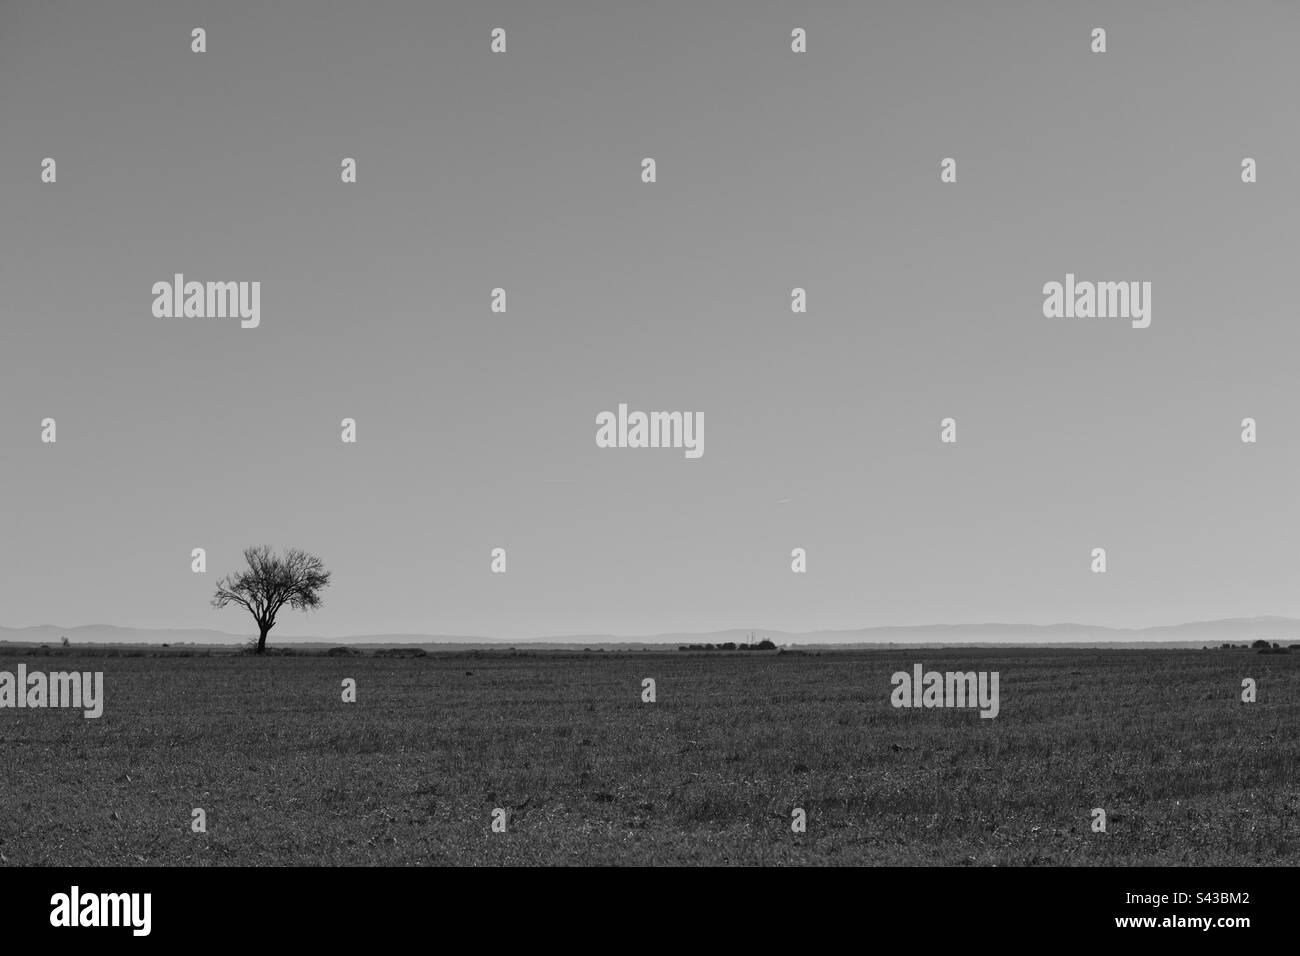 Einfache Baumlandschaft in Schwarz-Weiß. Minimalistische Fotografie Stockfoto